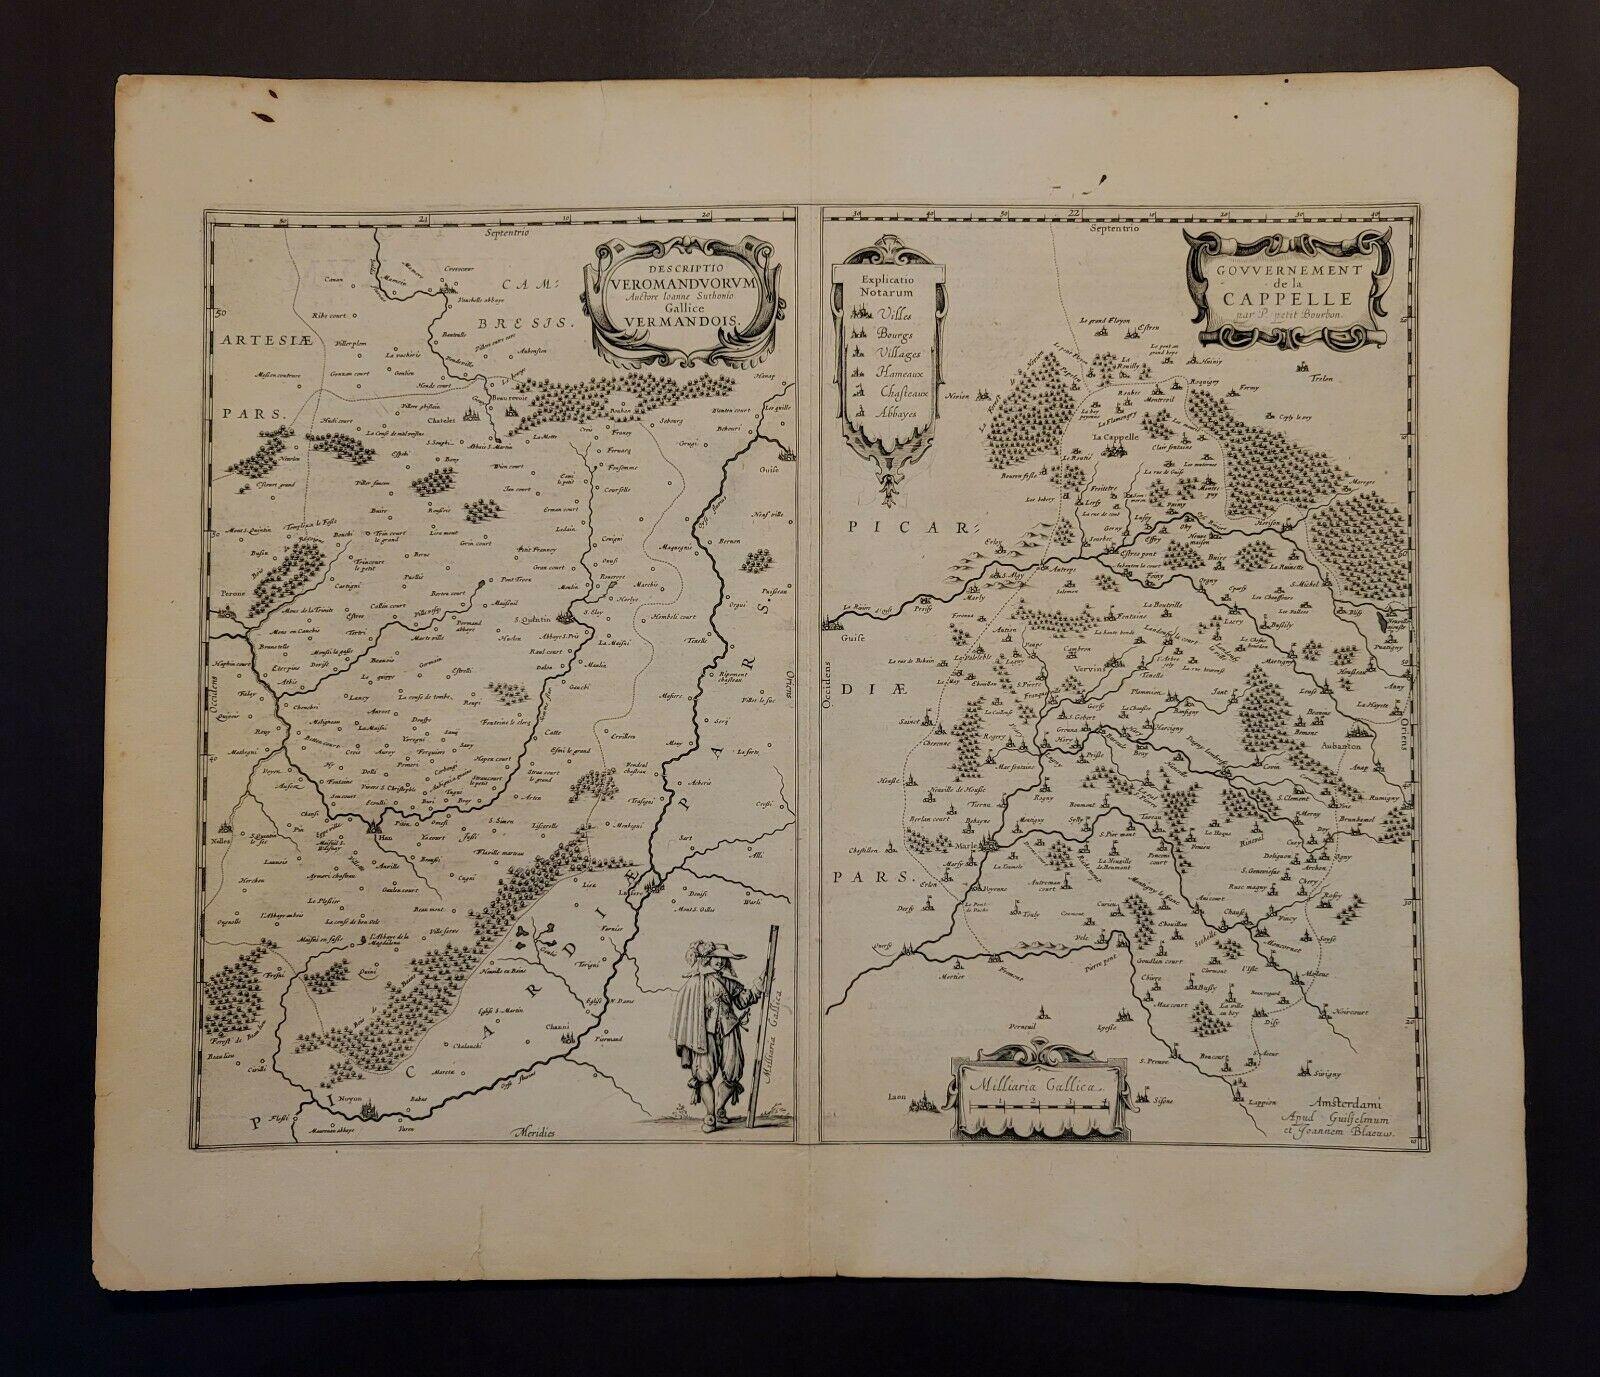 1657 Janssonius-Karte von 
Vermandois und Cappelle
 Ric.a004

Beschreibung: Antike Karte von Frankreich mit dem Titel 